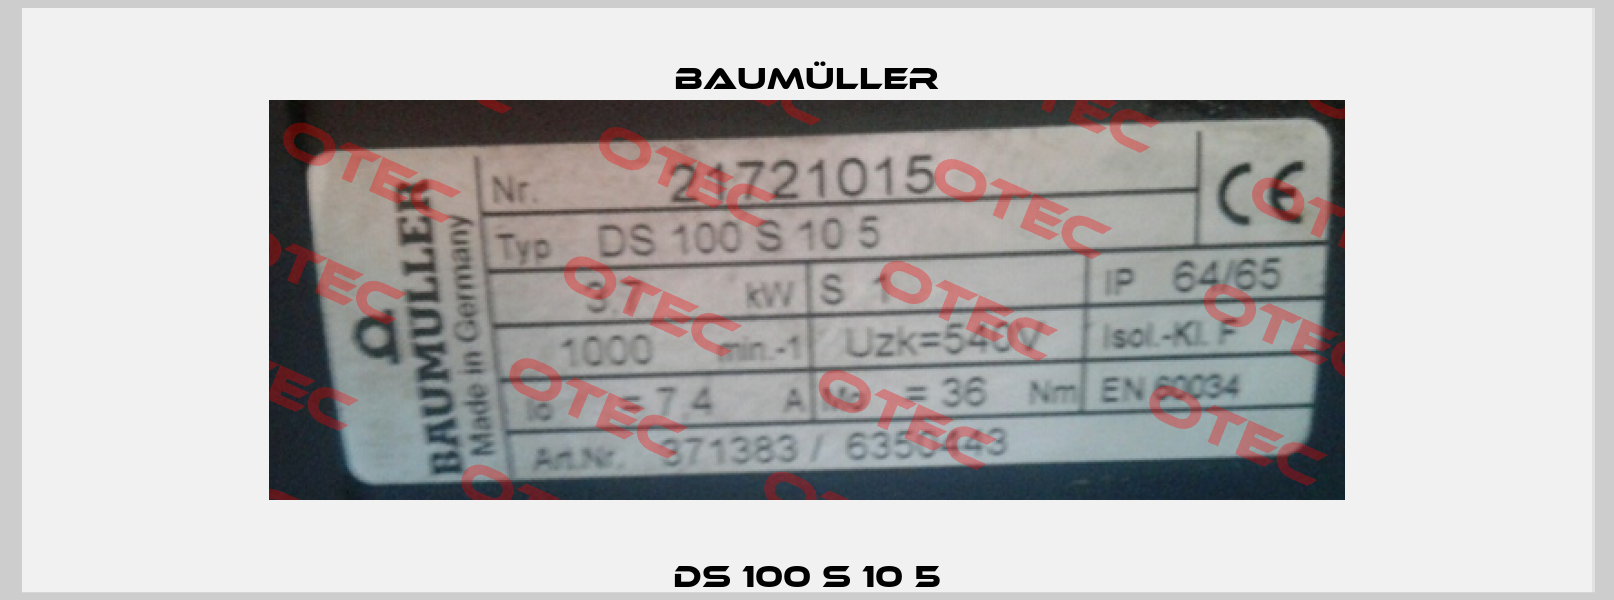 DS 100 S 10 5 Baumüller